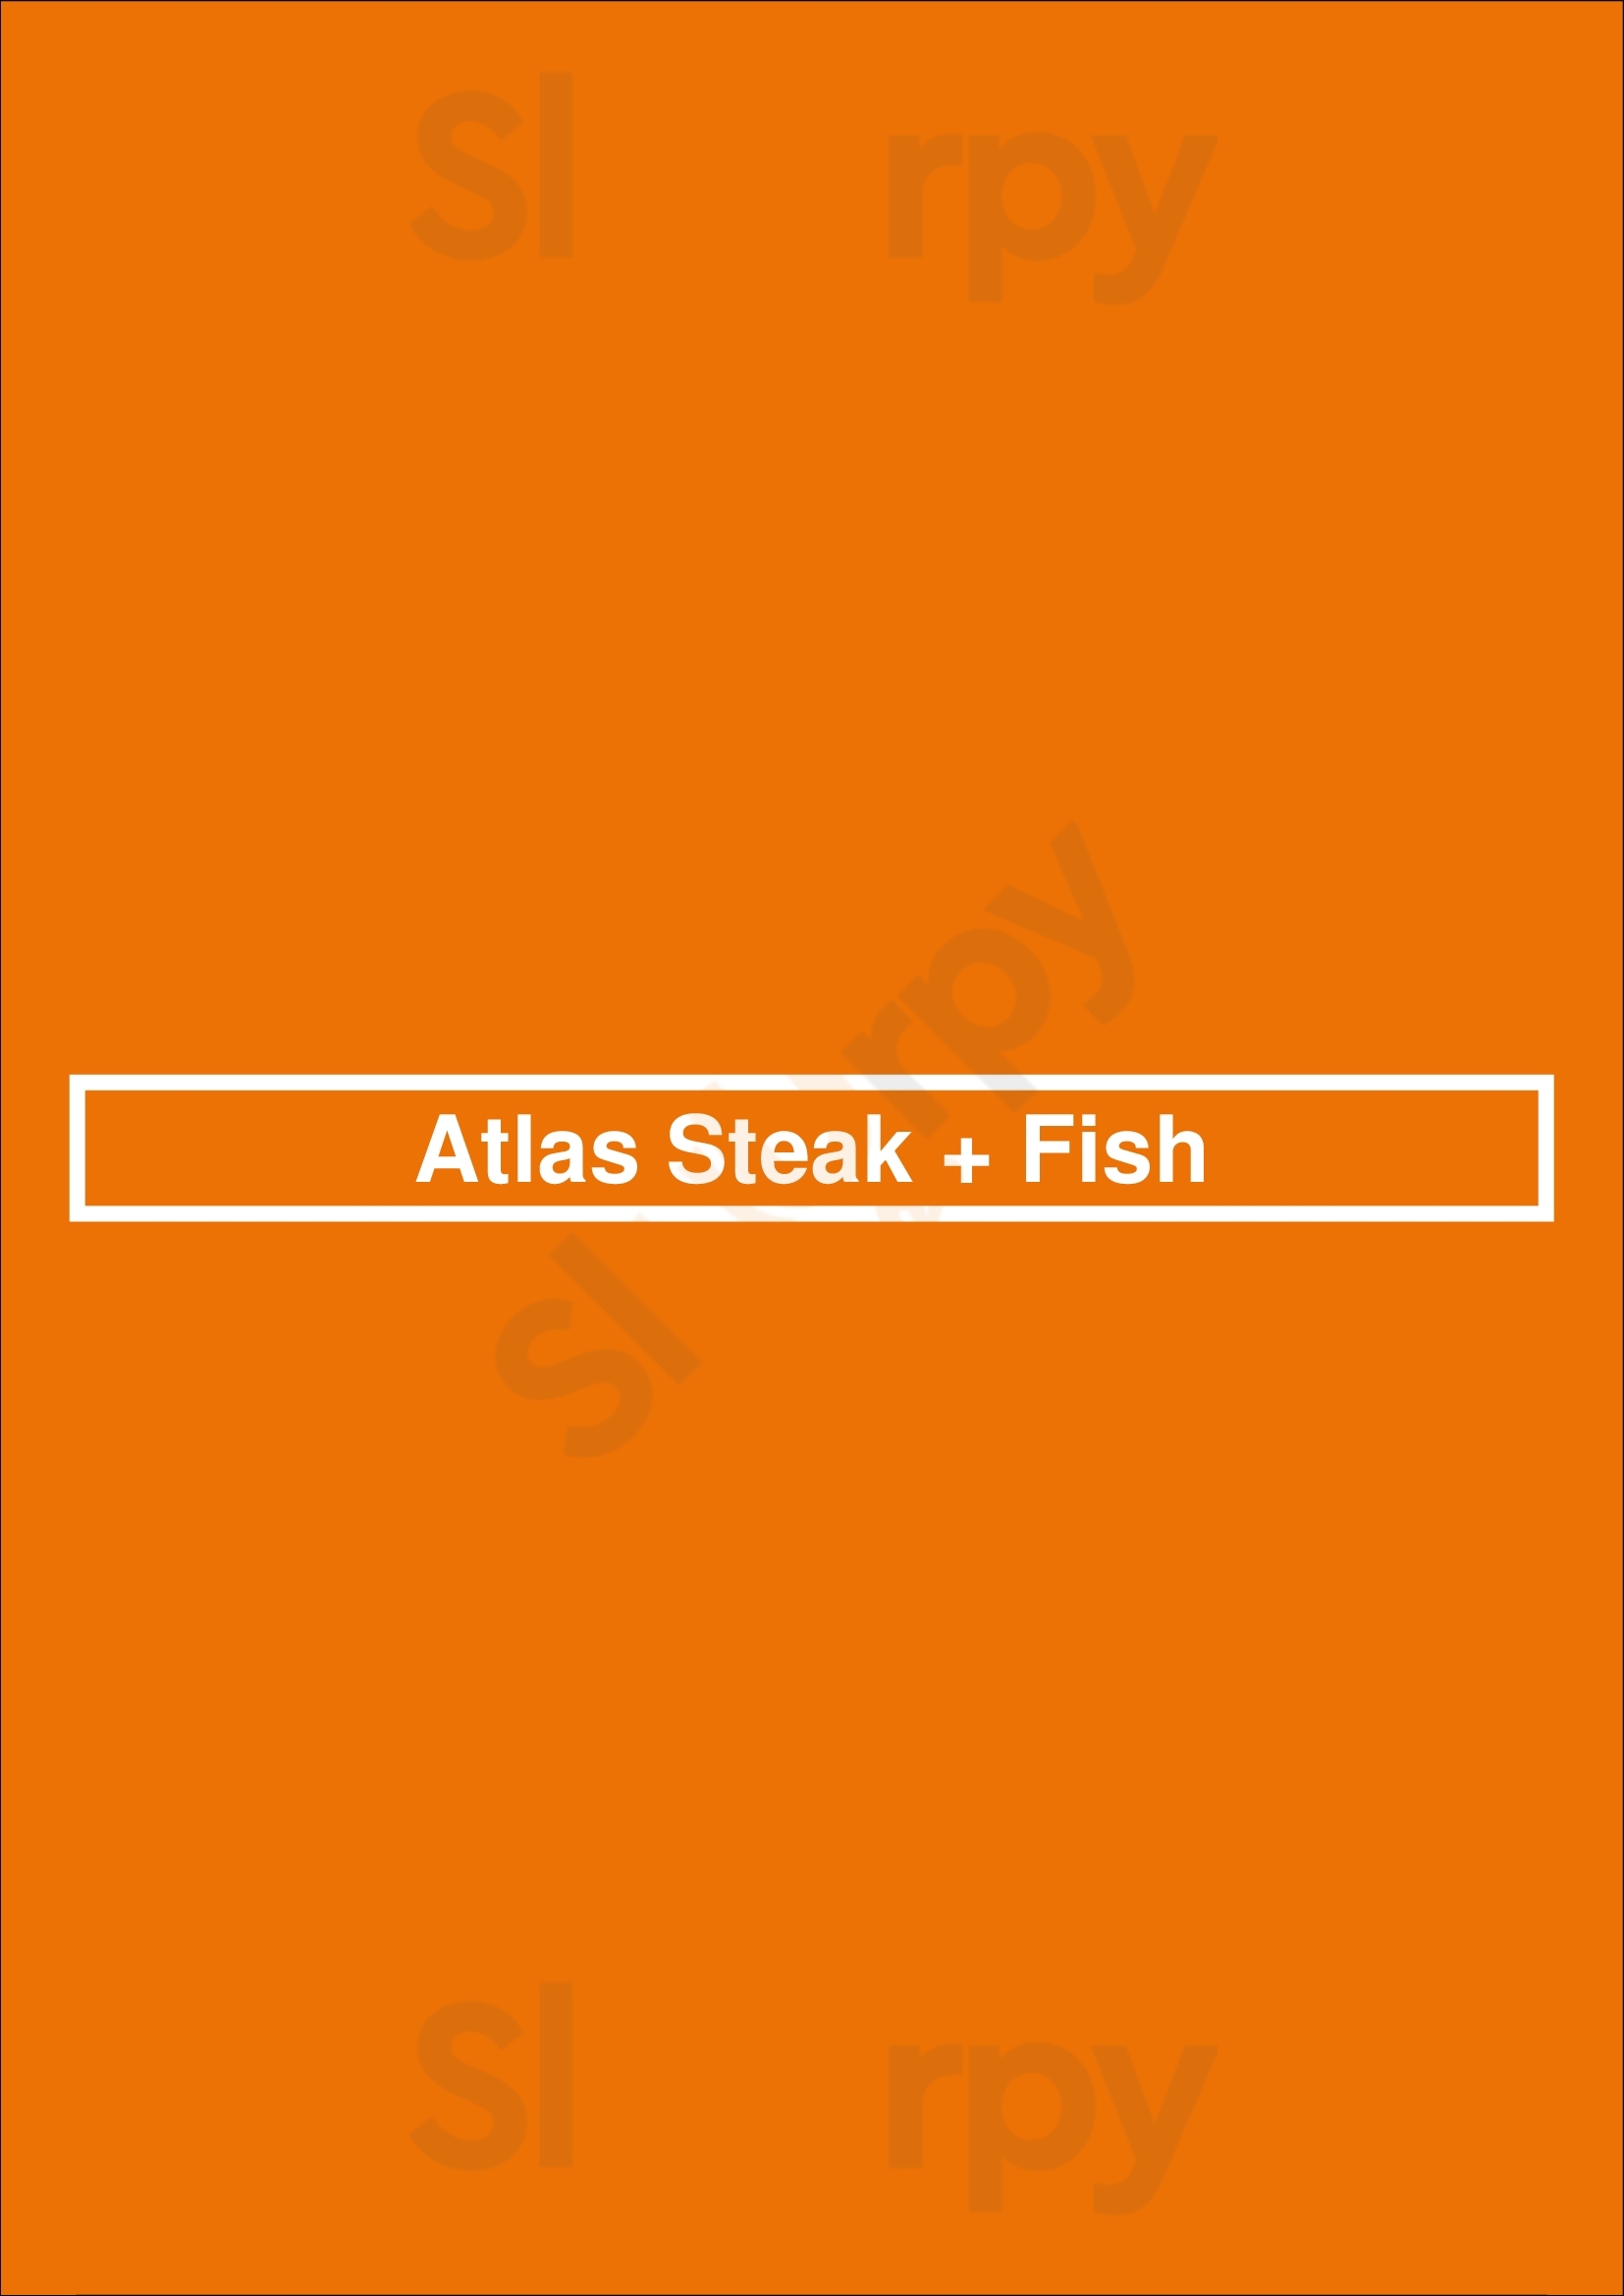 Atlas Steak + Fish Kamloops Menu - 1